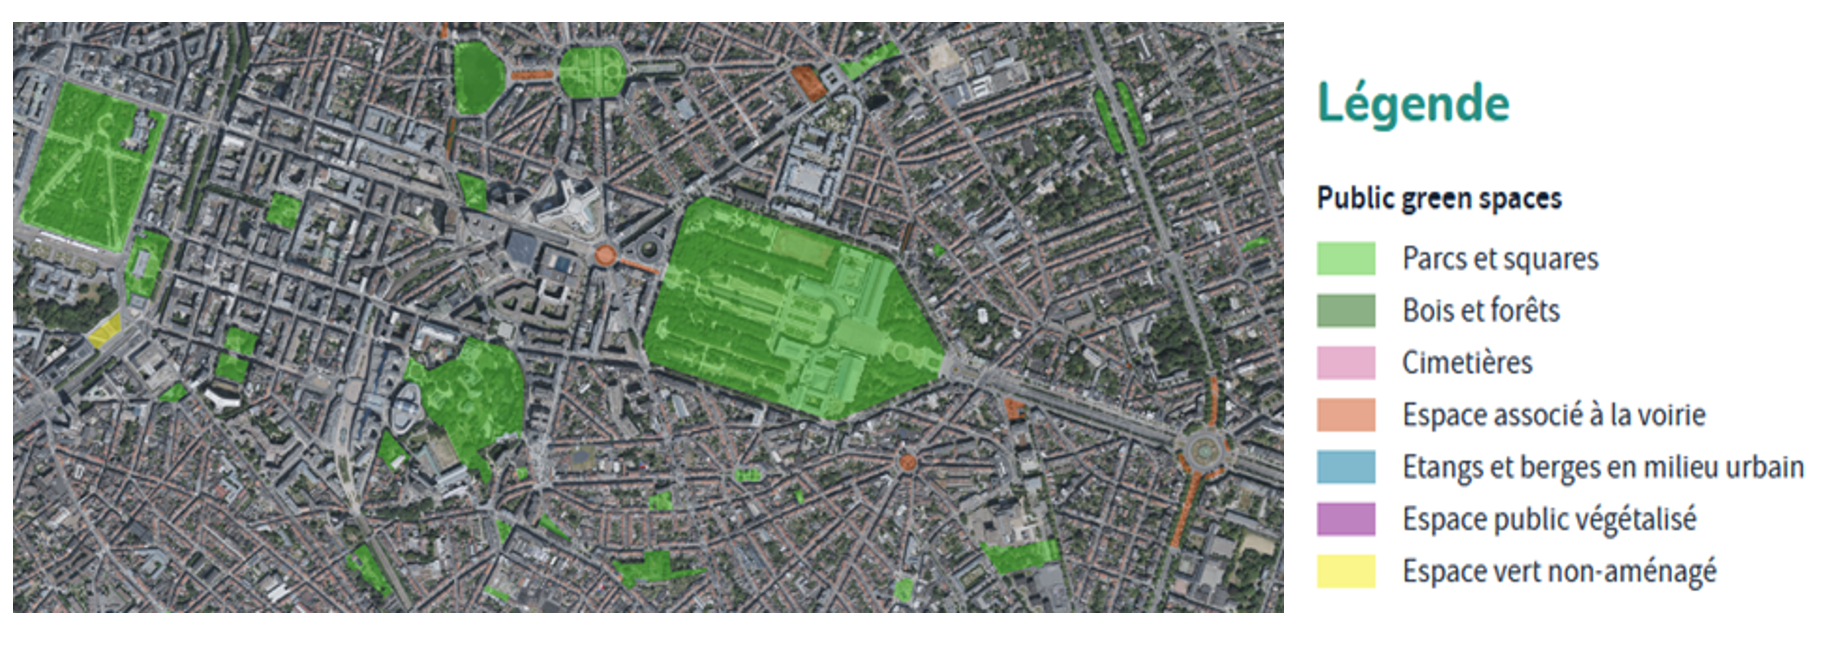 Extrait de la carte des espaces verts publics sur fond de photographie aérienne (janvier 2024)